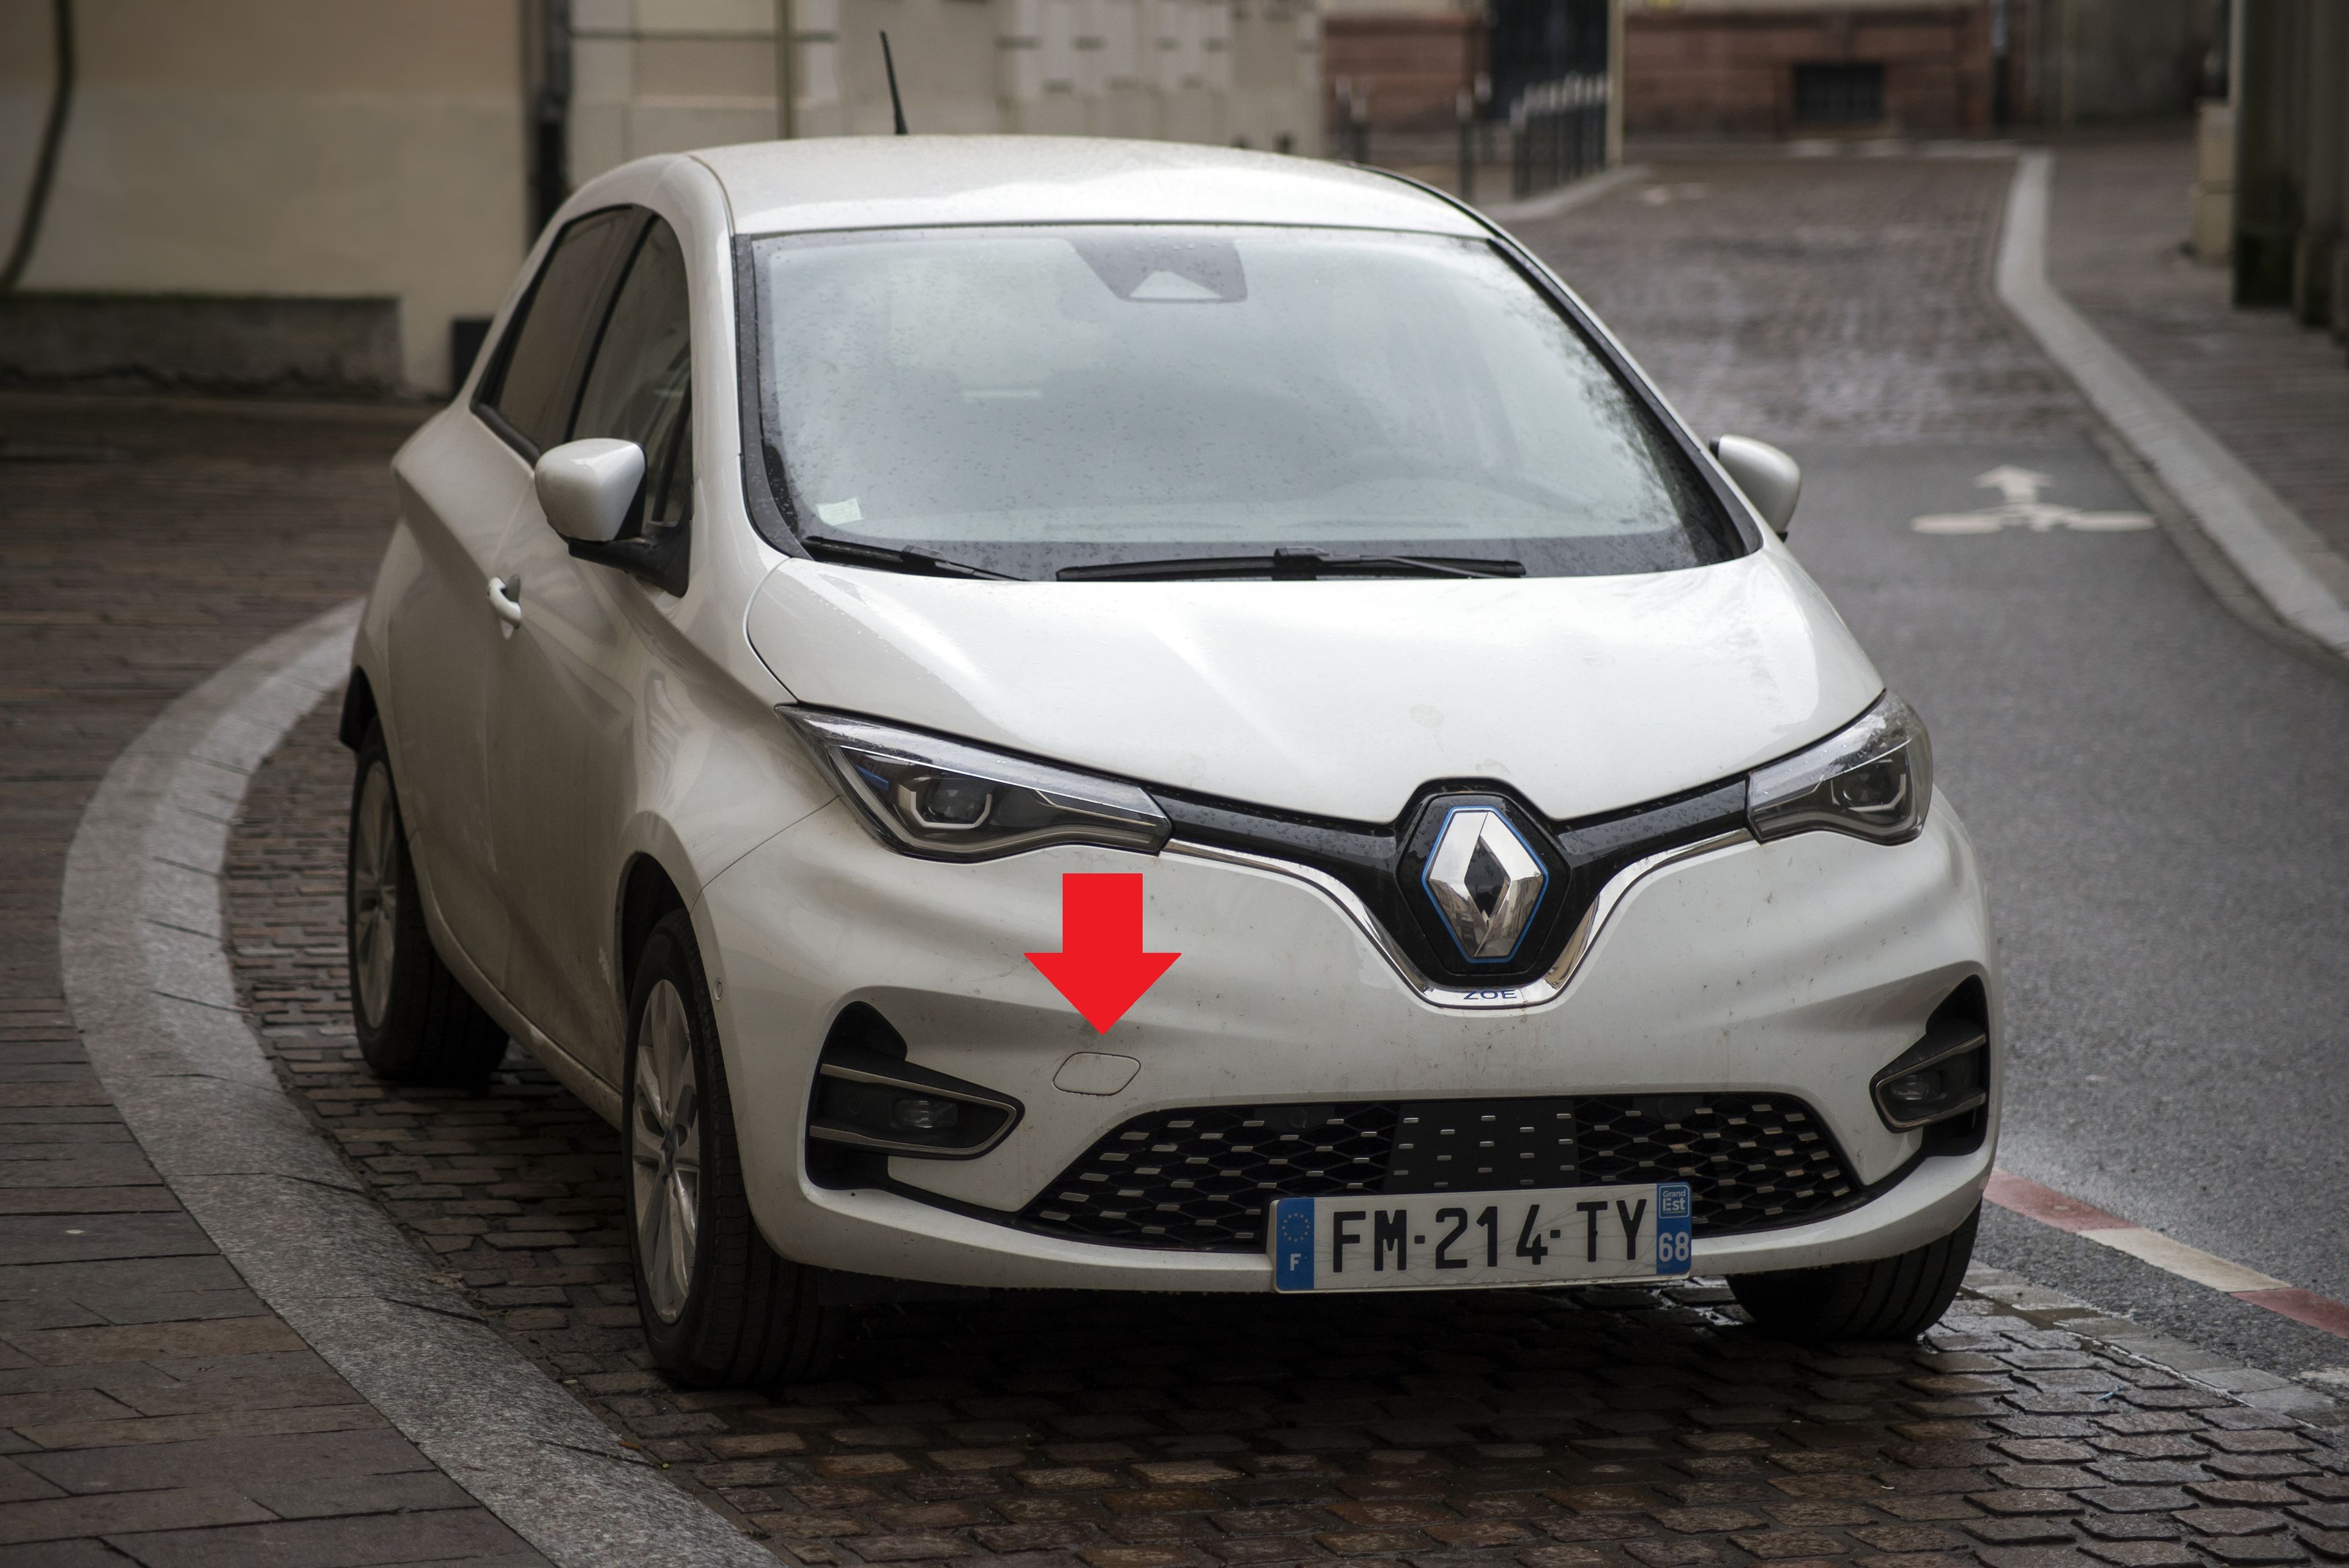 Qué son círculos y cuadrados de los parachoques de coche? | Business Insider España